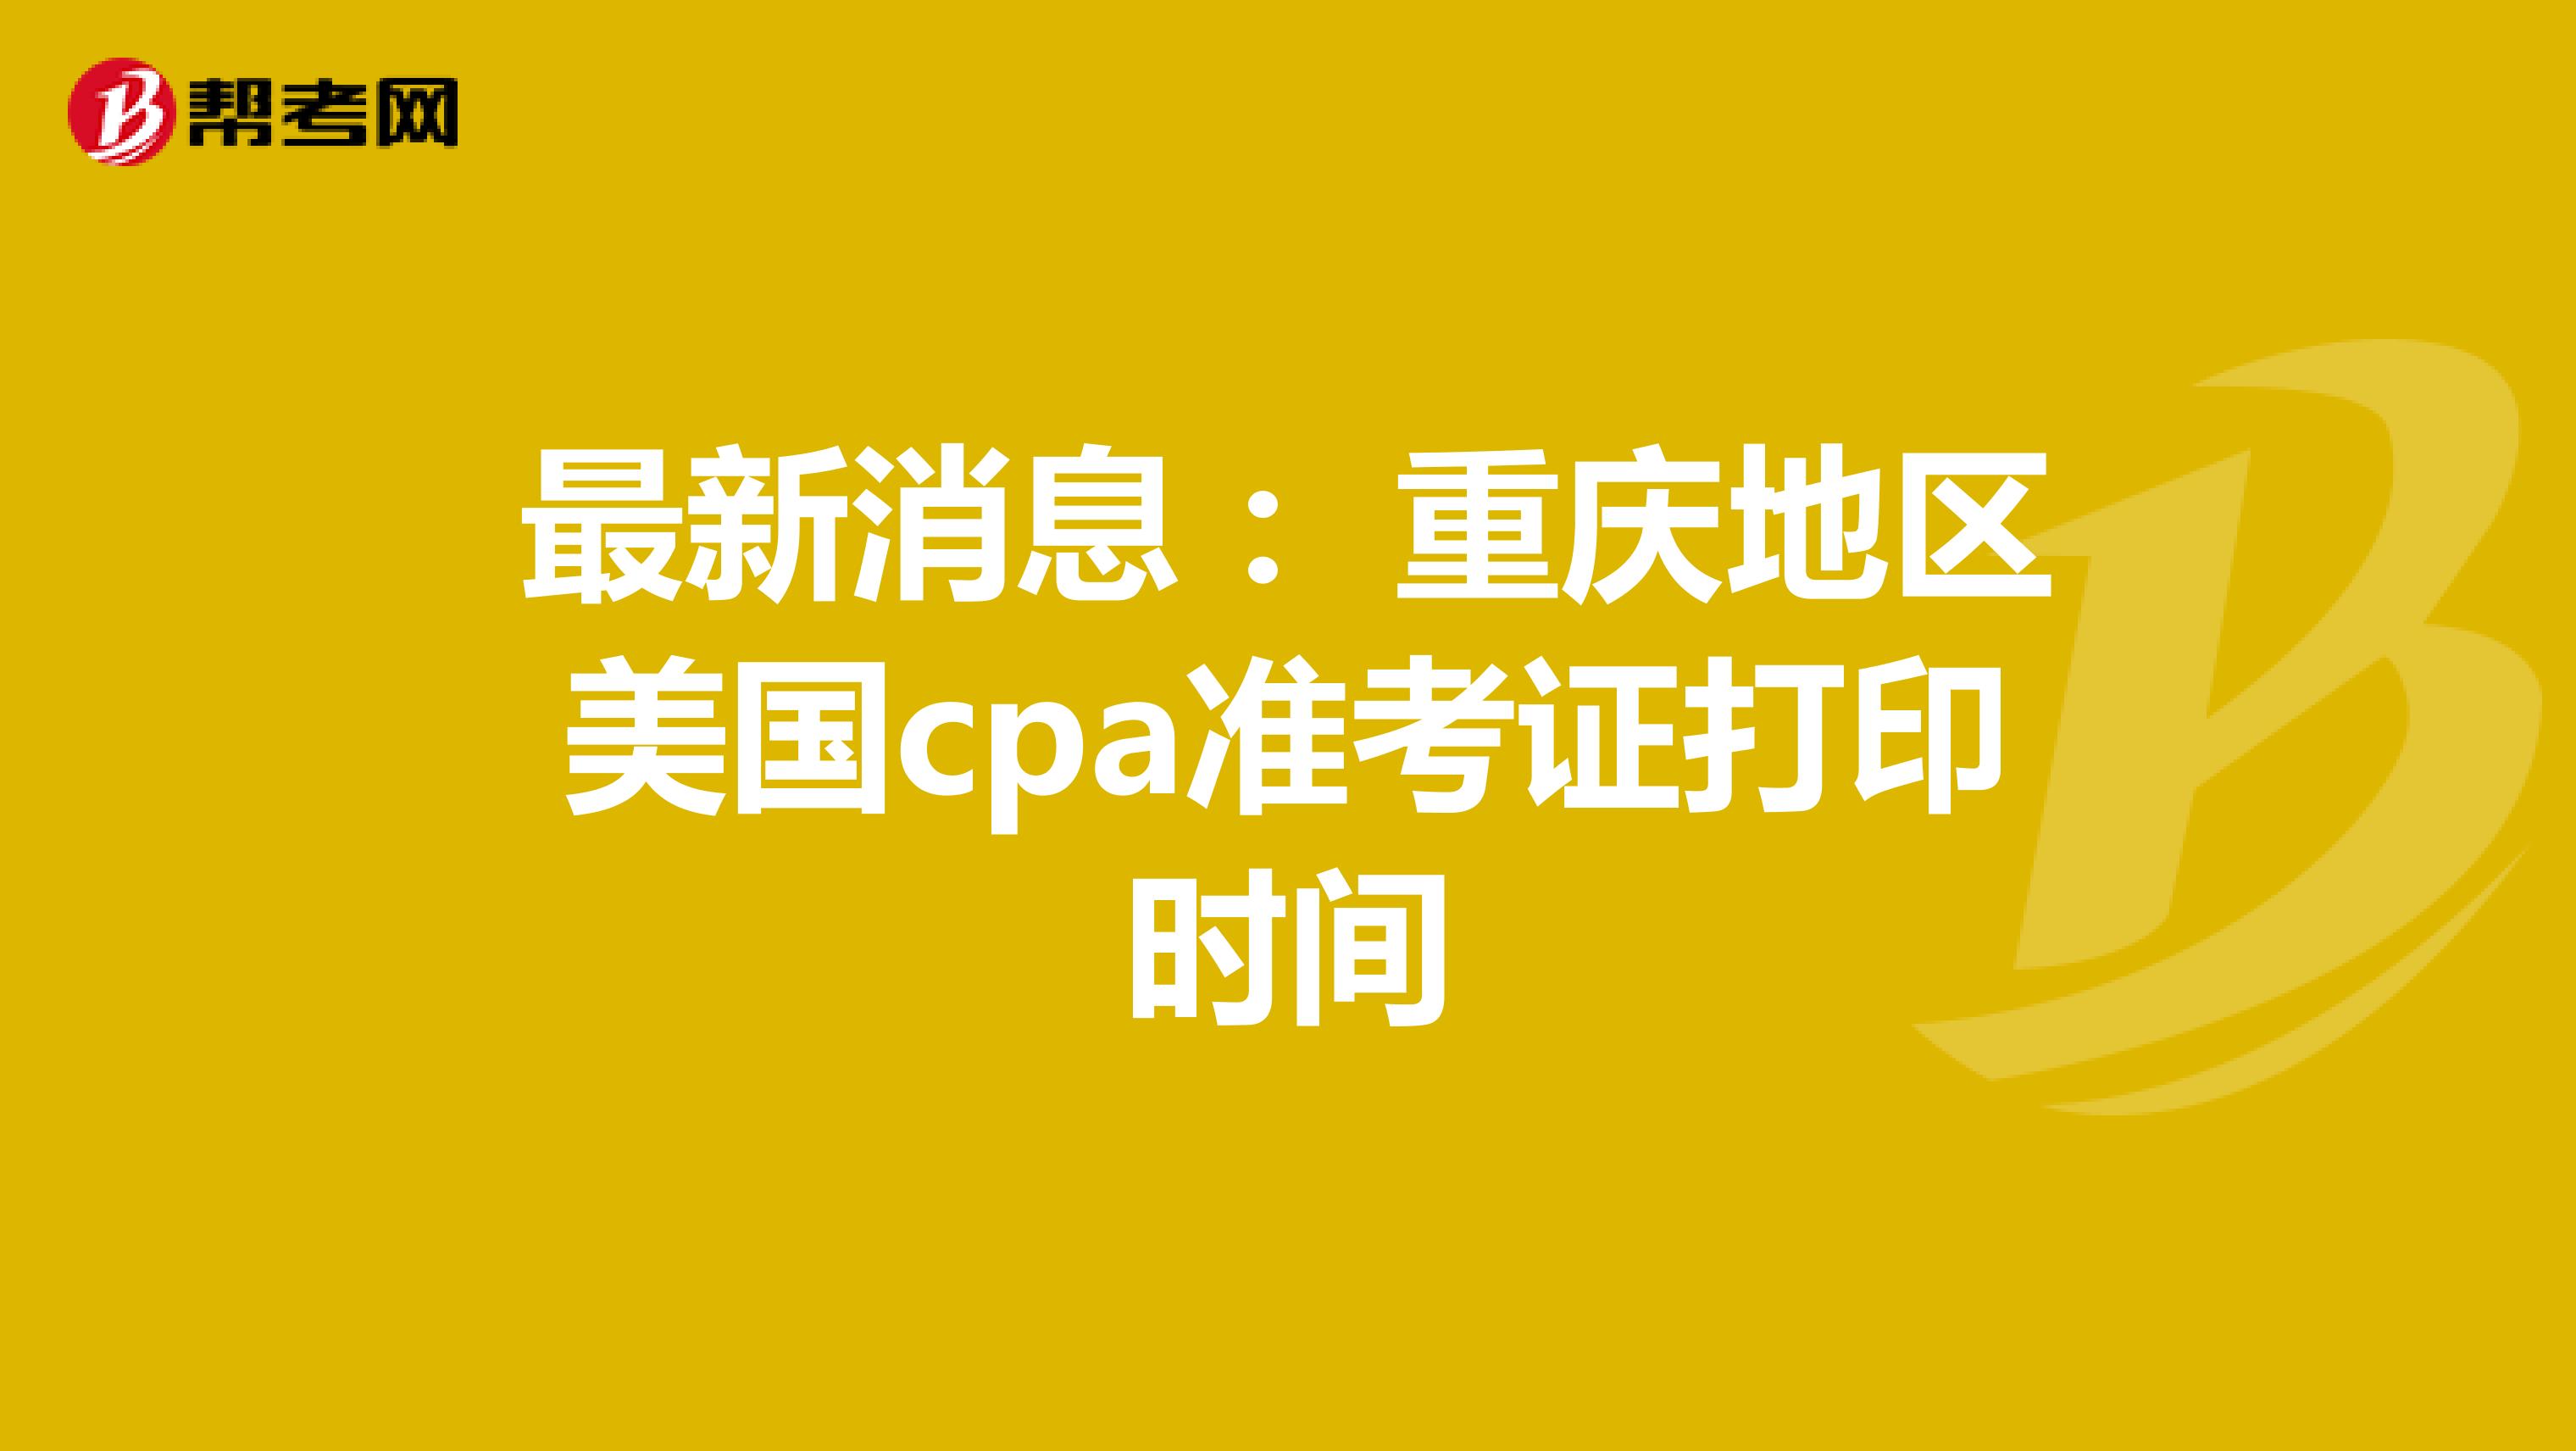 最新消息： 重庆地区美国cpa准考证打印时间